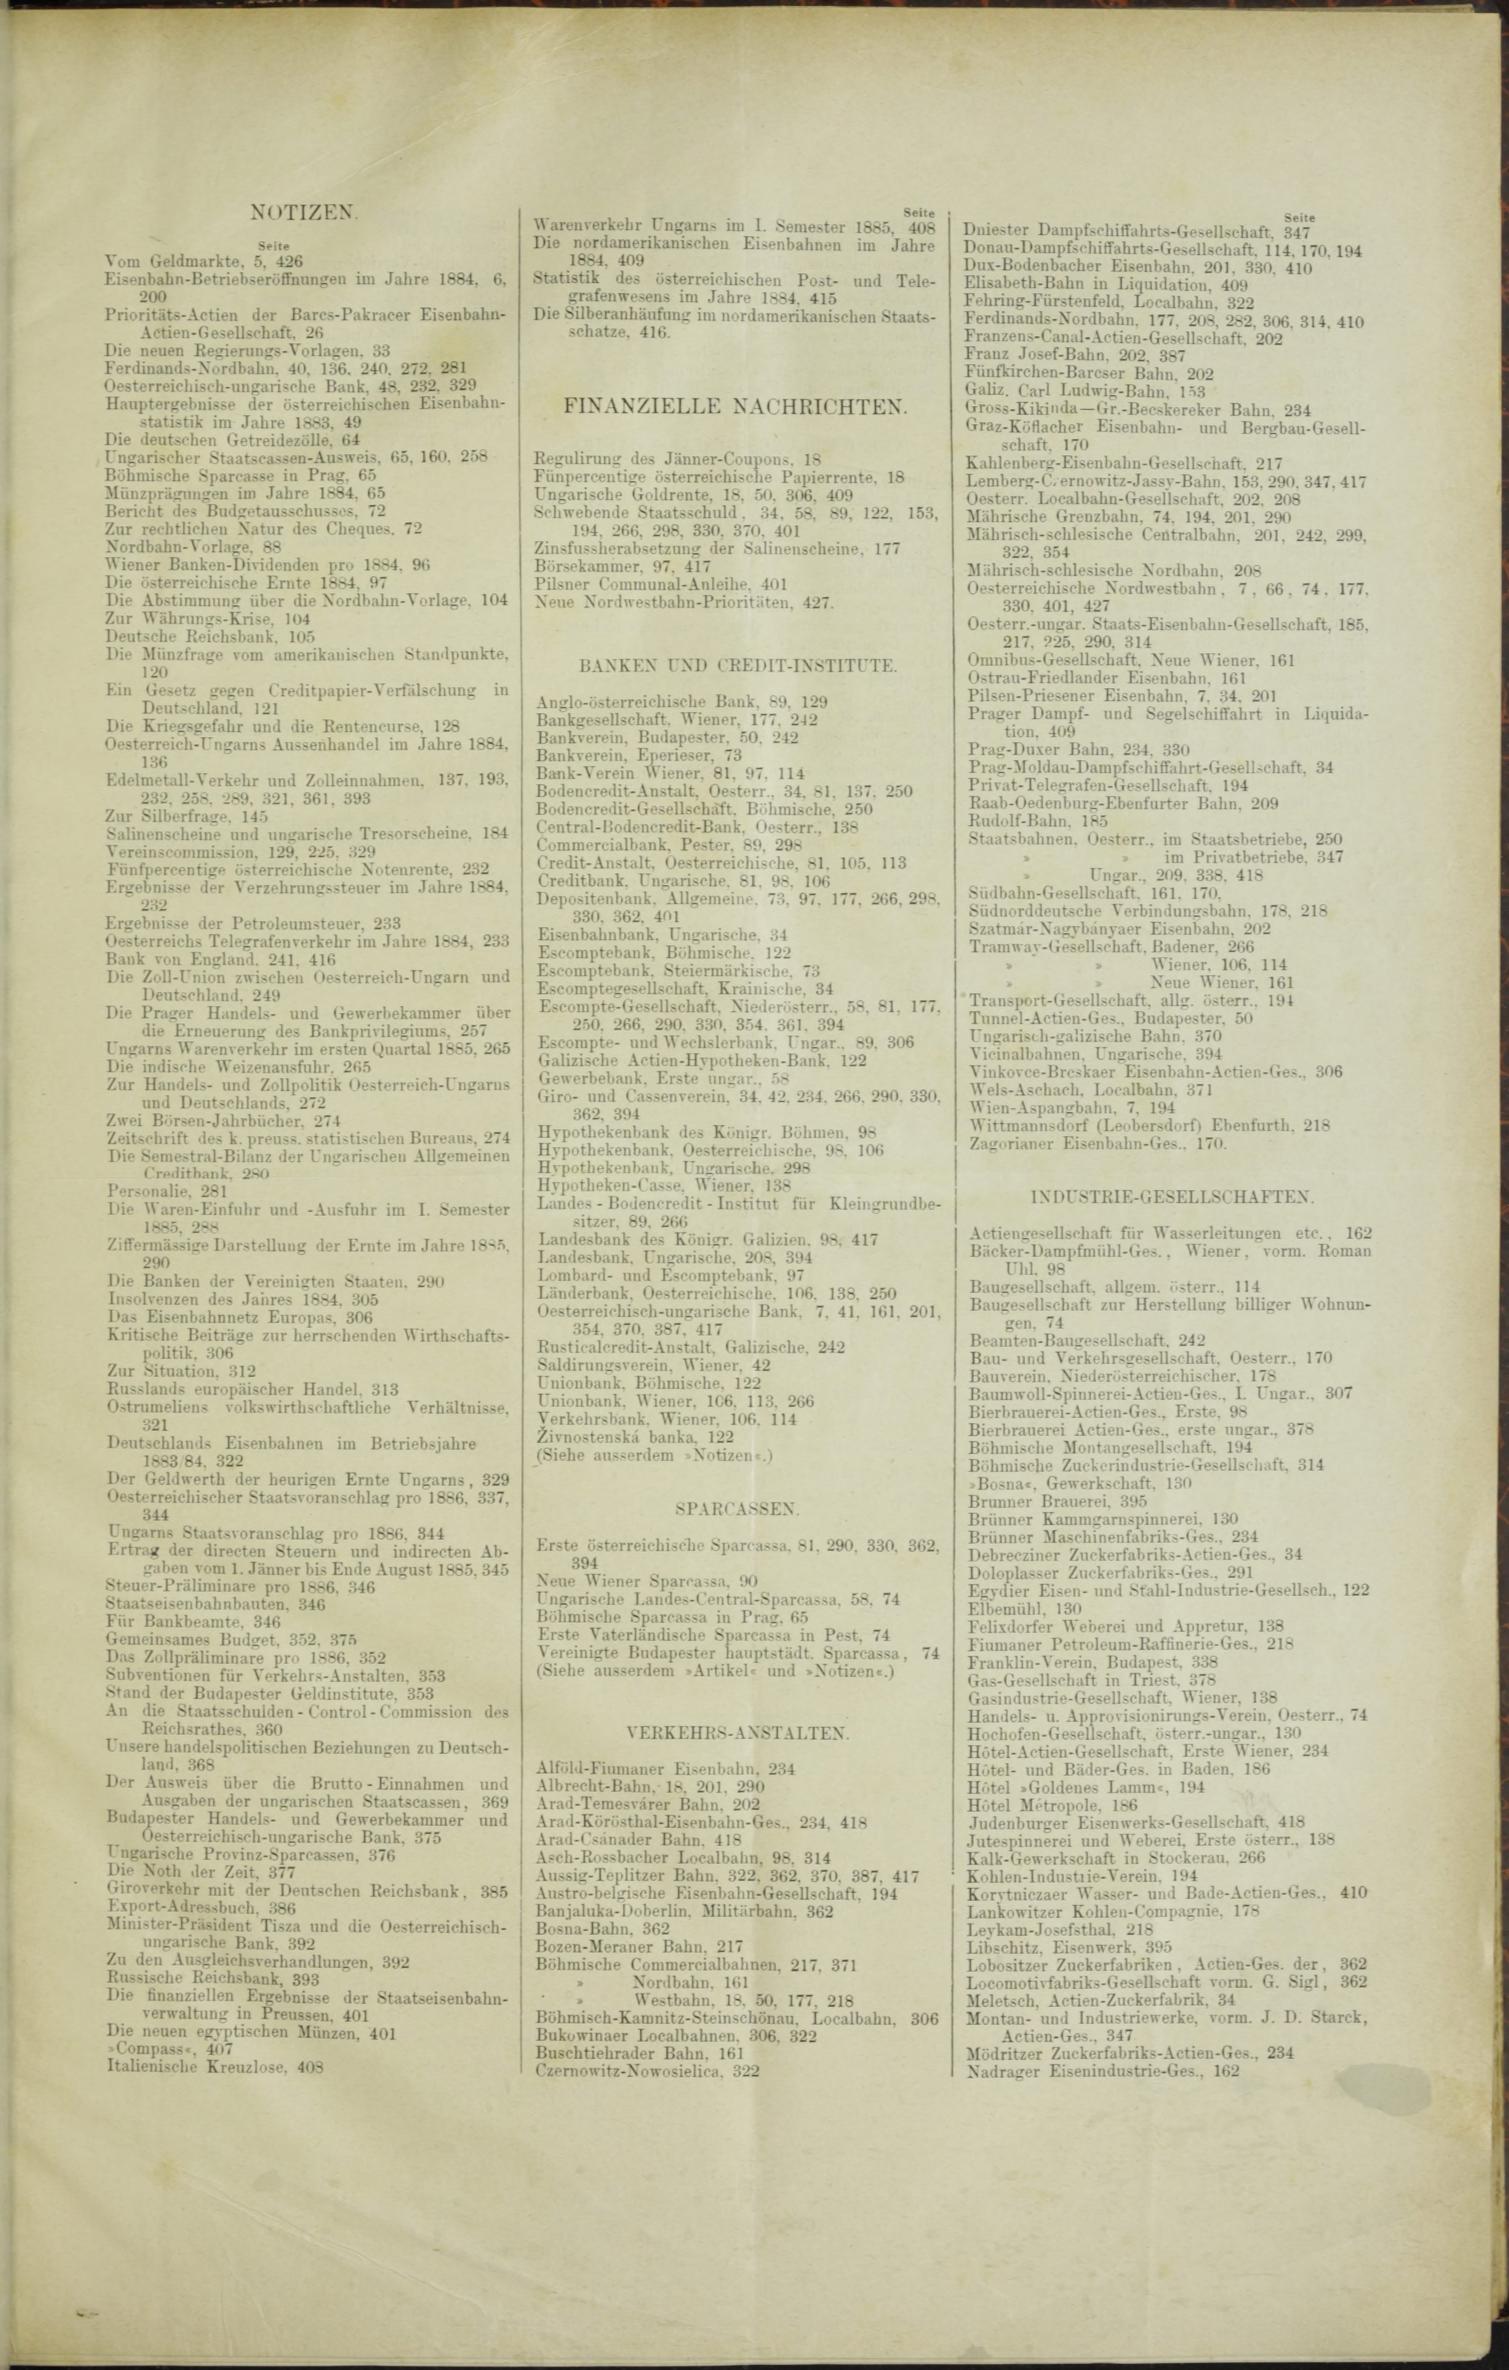 Der Tresor 03.12.1885 - Seite 11